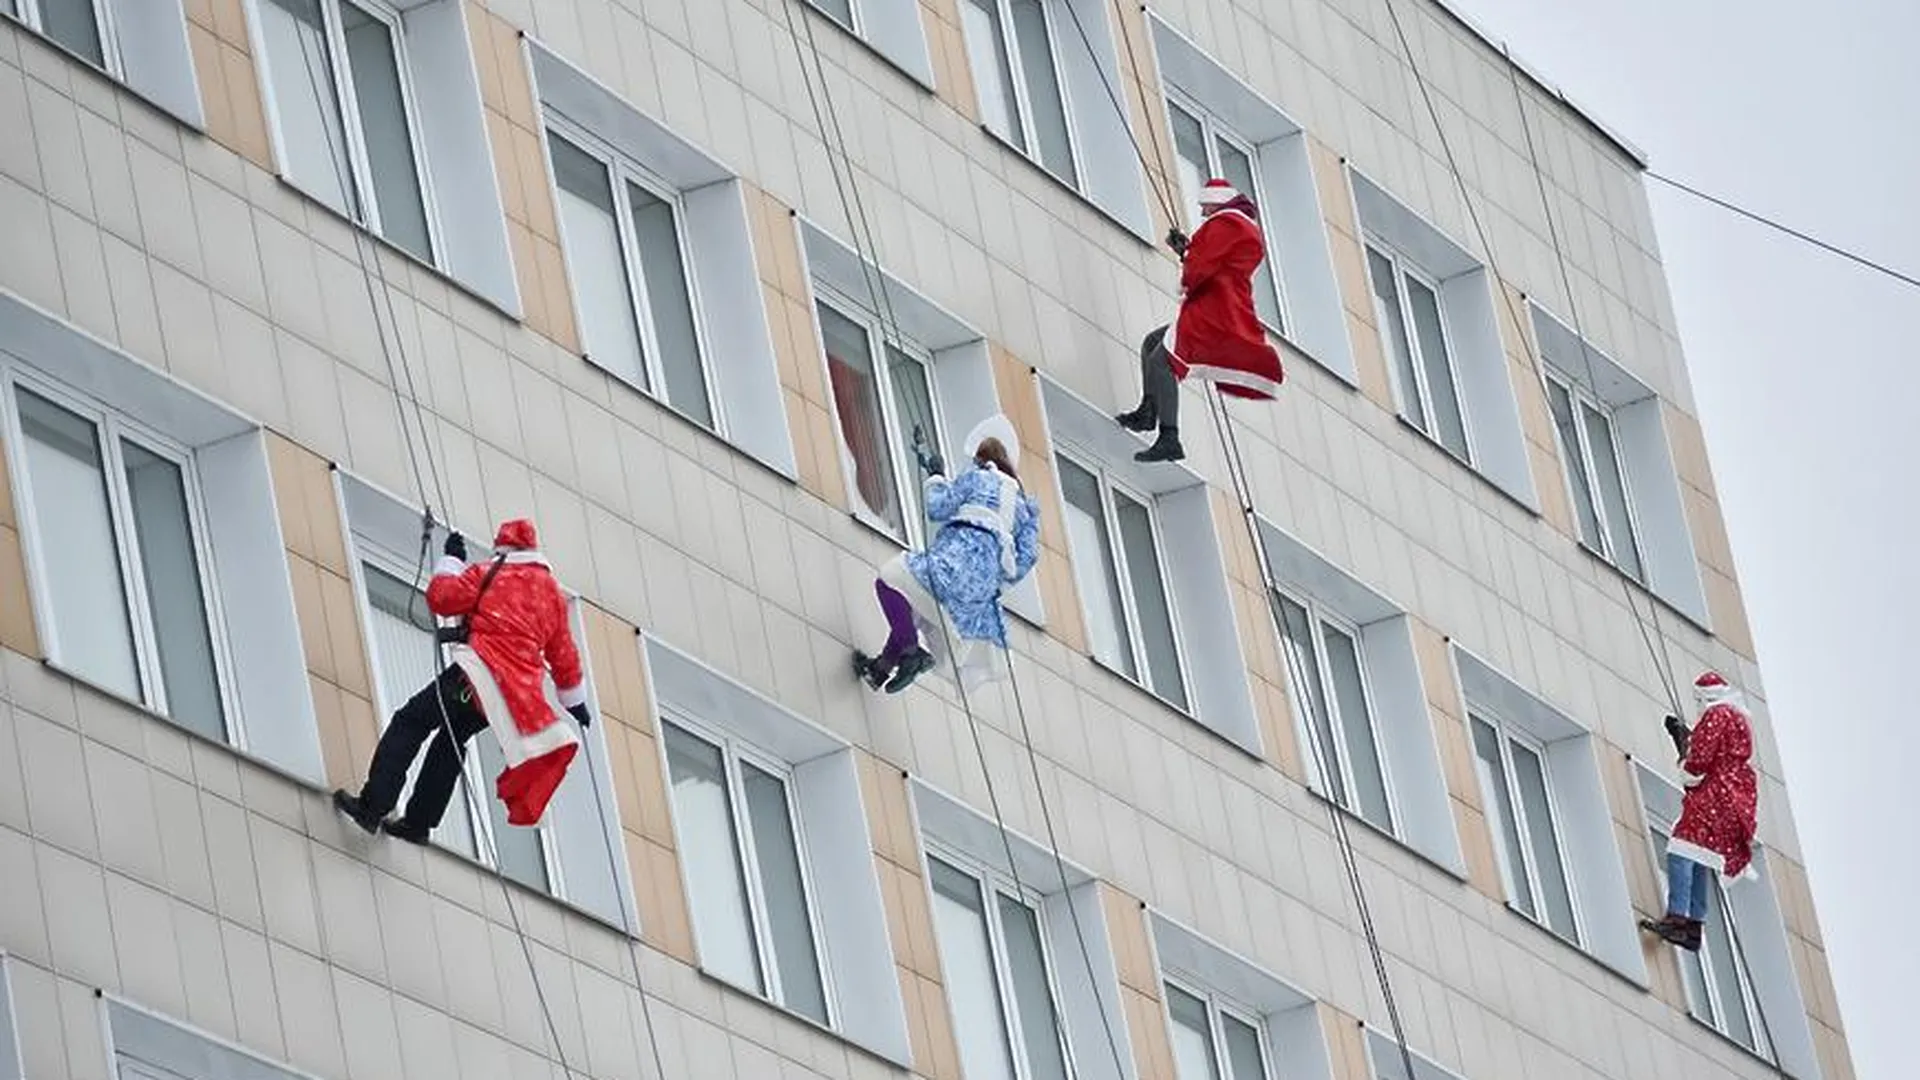 В Балашихе Деды Морозы поздравили онкобольных детей с праздником, спустившись с крыши